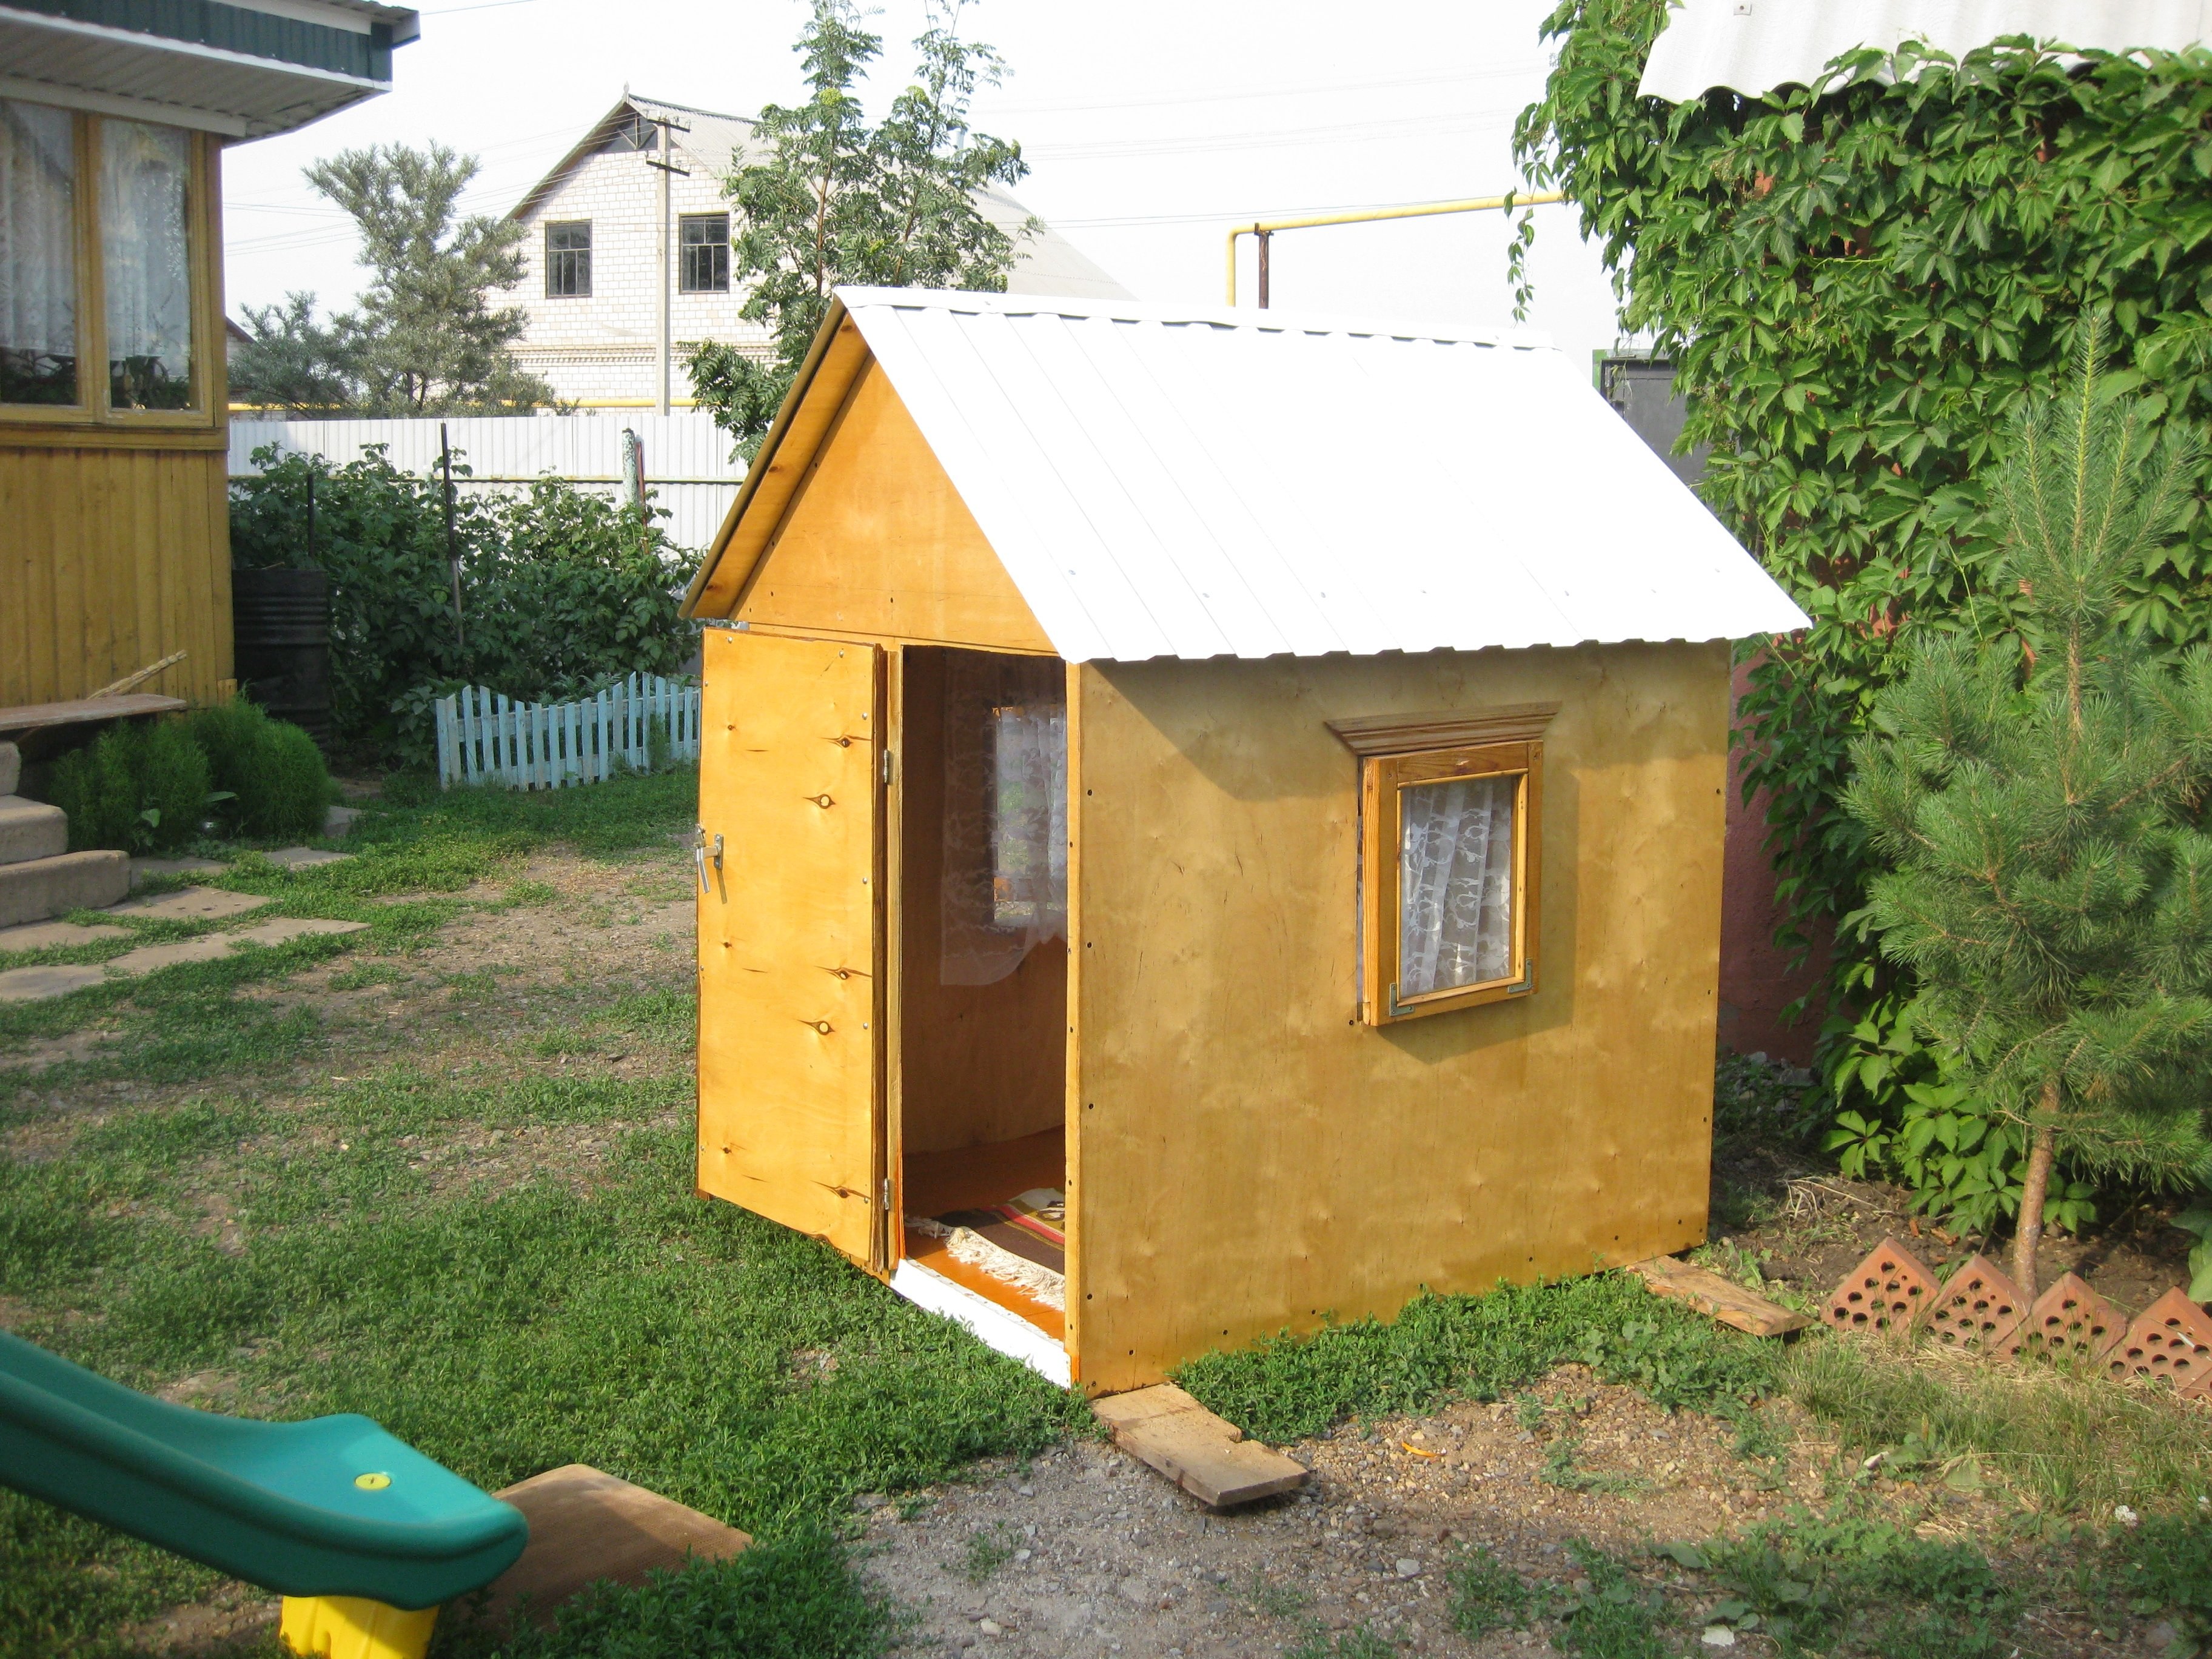 Строим сами: чертежи и размеры детского домика на даче